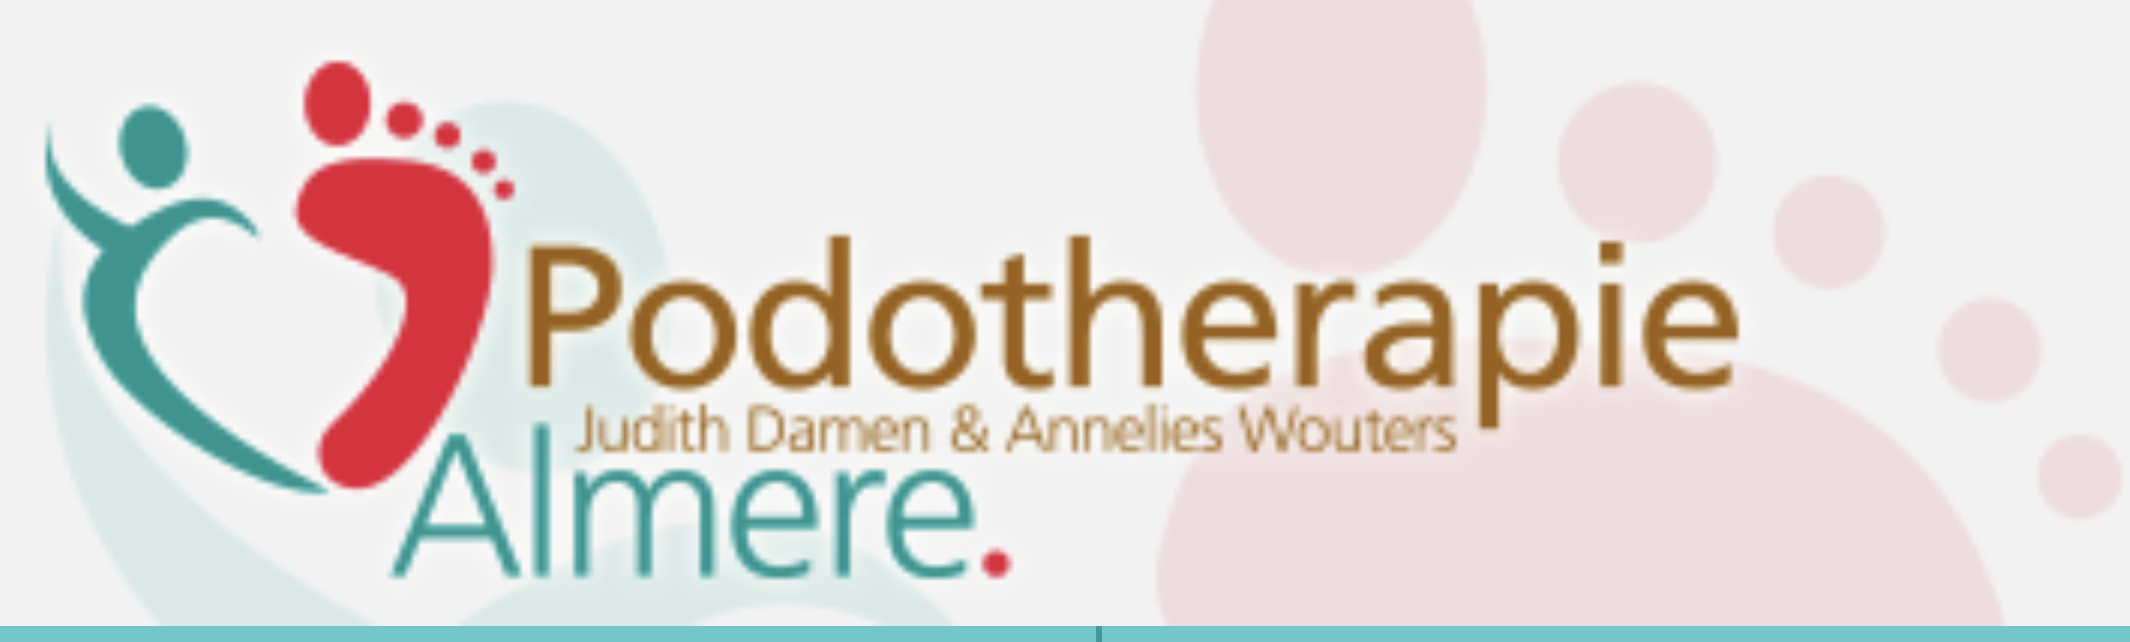 Podotherapie Almere